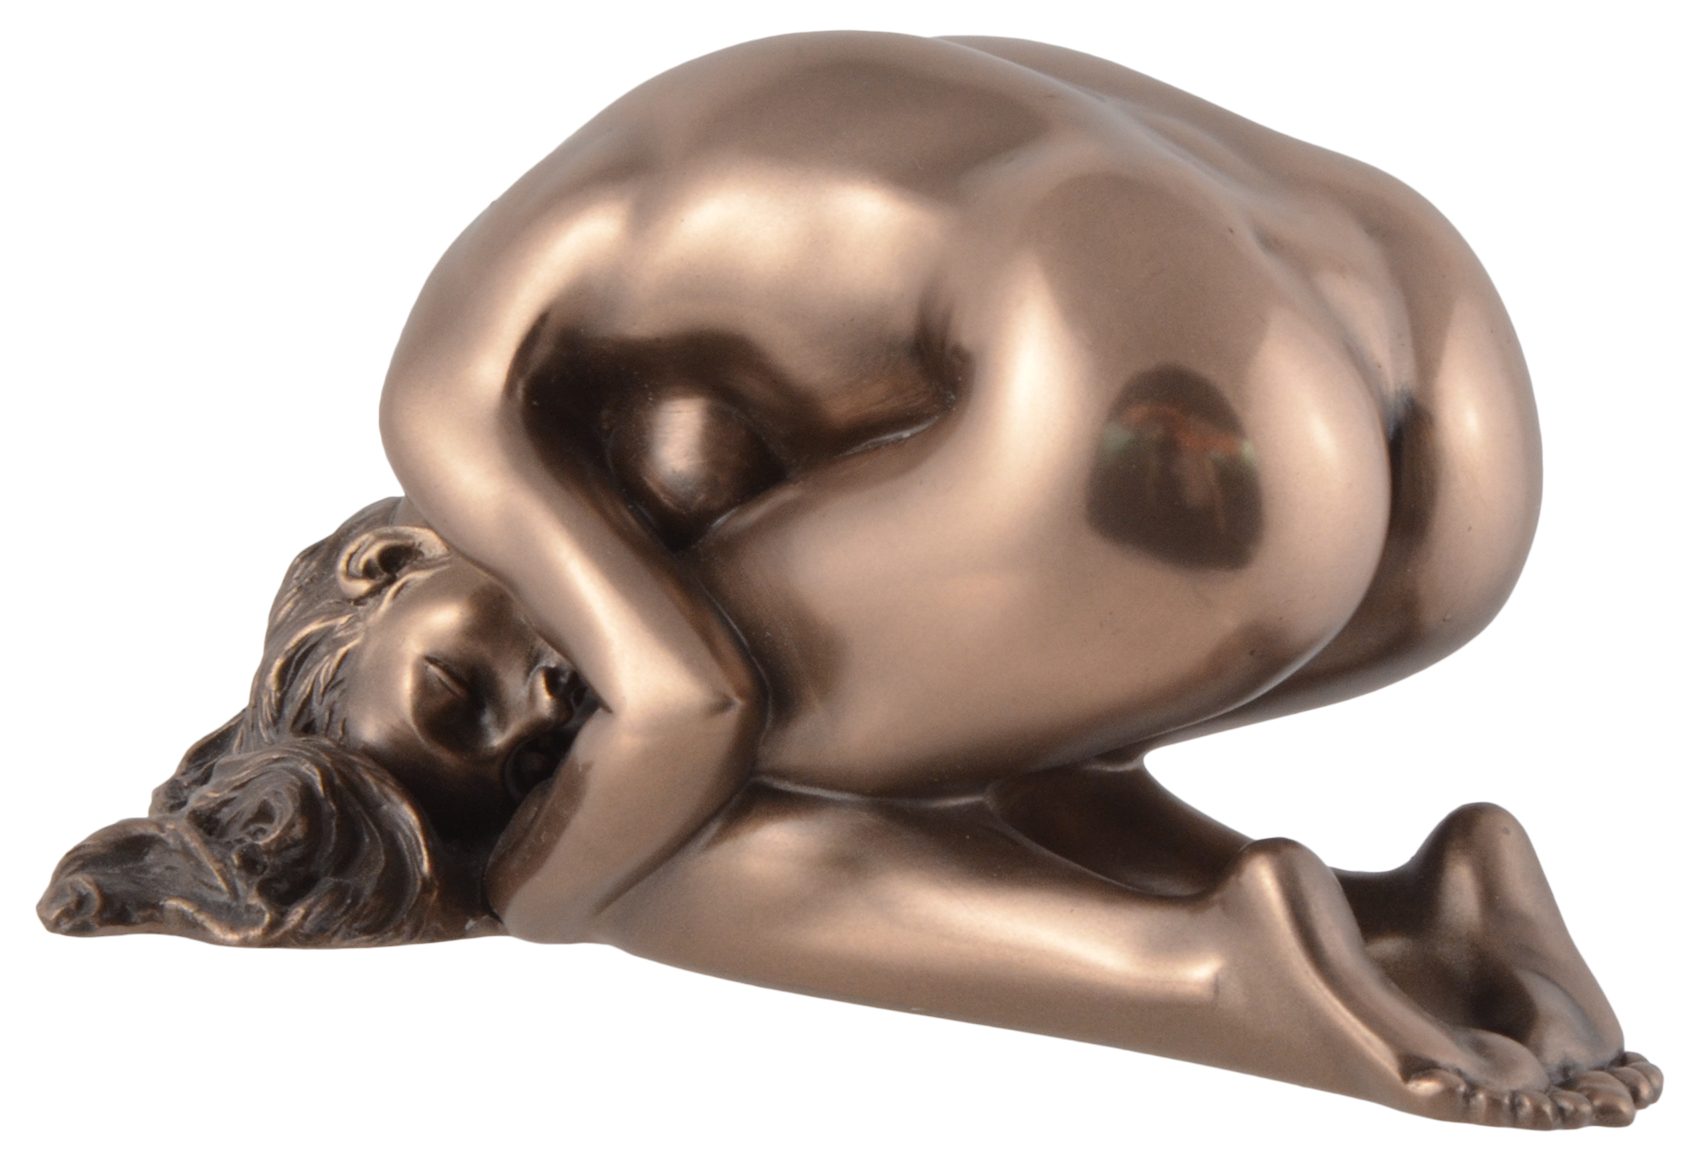 Veronese, Nackte Dekofigur kniend 15x8x8cm direct Vogler LxBxH: in ca. bronziert, Hand Gmbh Dienerin Pose Kowtow - Akt by von